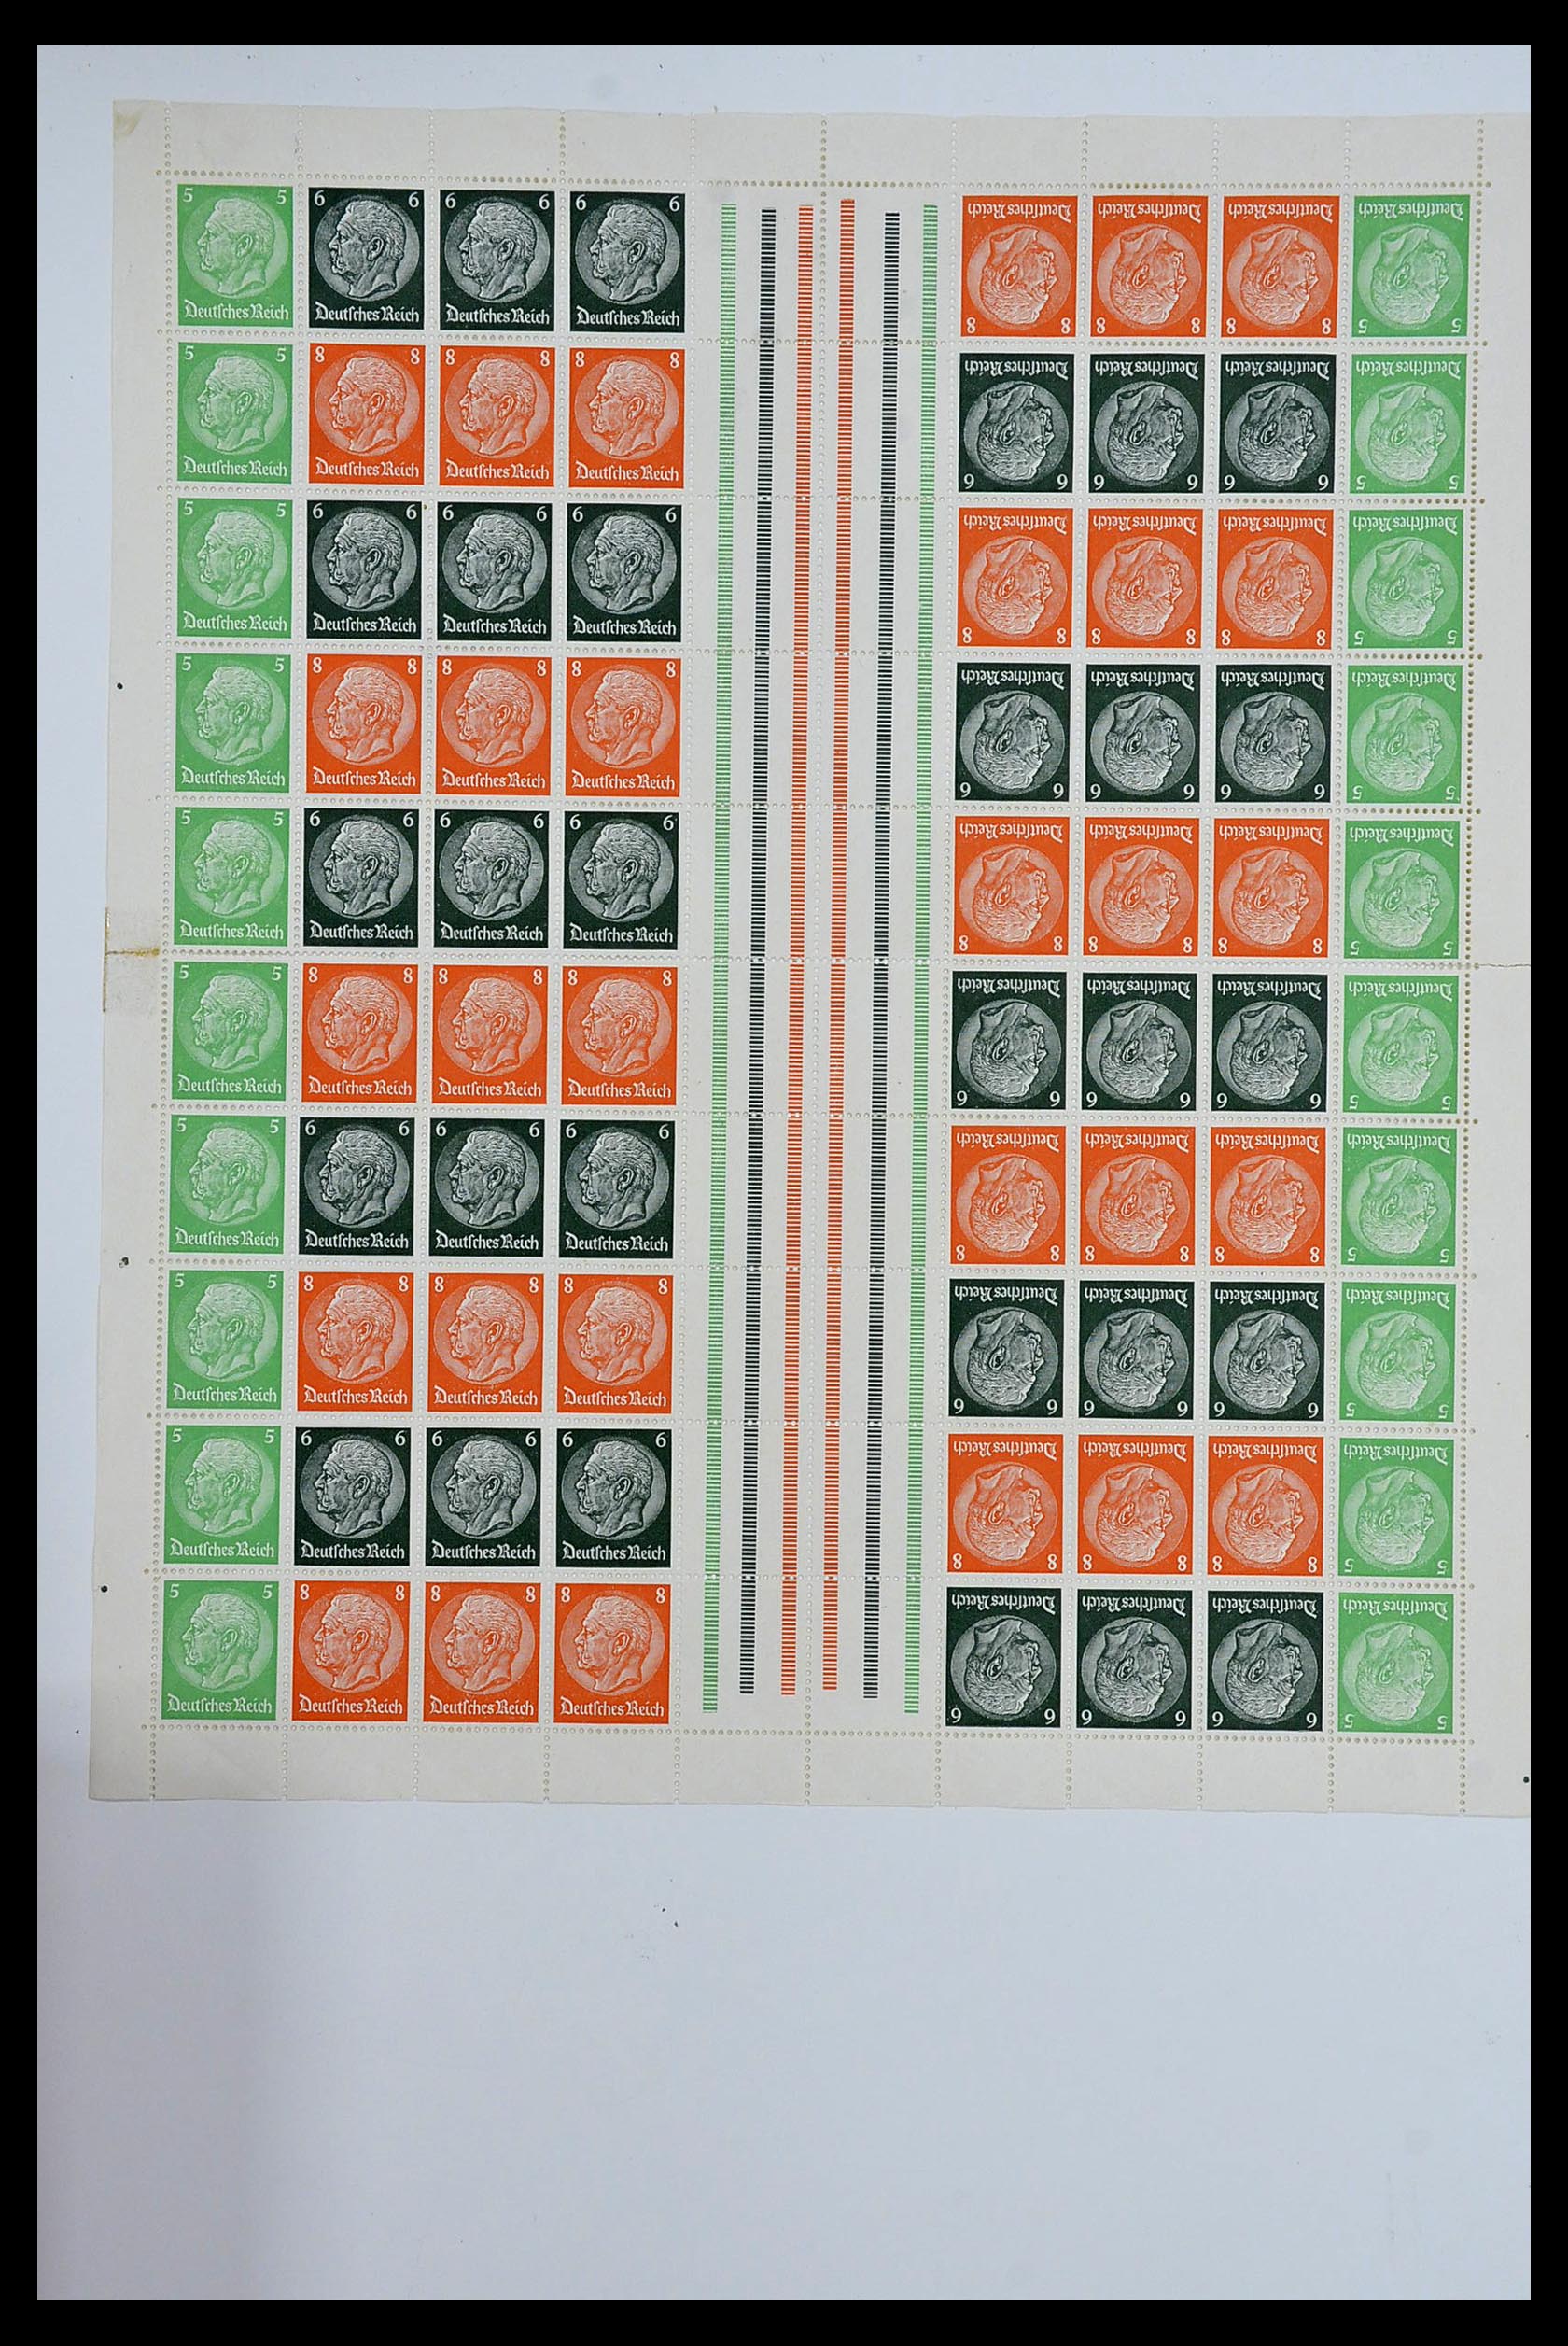 34164 029 - Stamp collection 34164 German Reich Markenheftchenbogen 1933-1942.